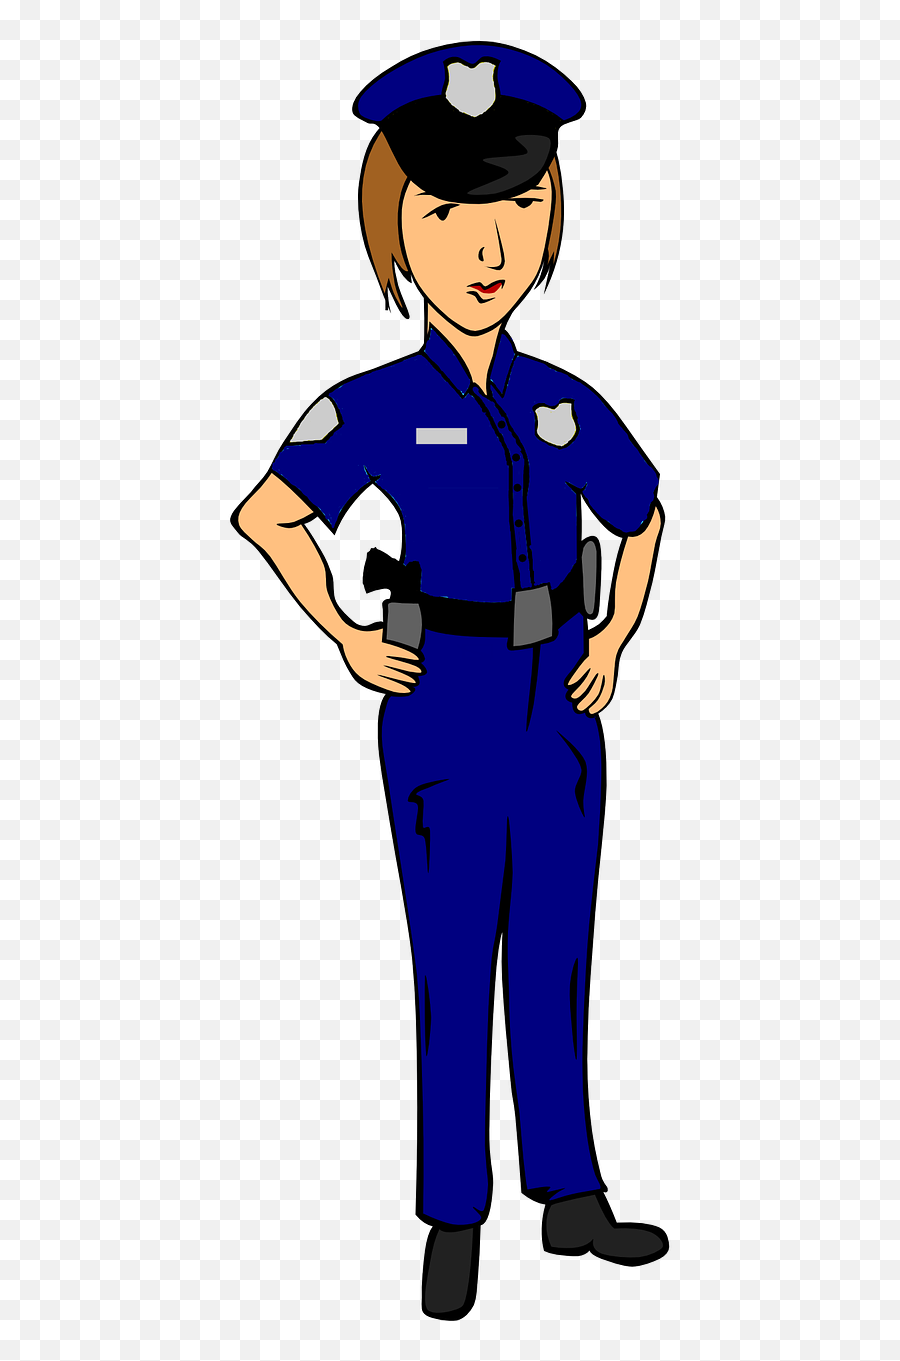 Dream Jobs - Baamboozle Mujer Imagenes De Policias Animados Emoji,Flight Attendant Emoji